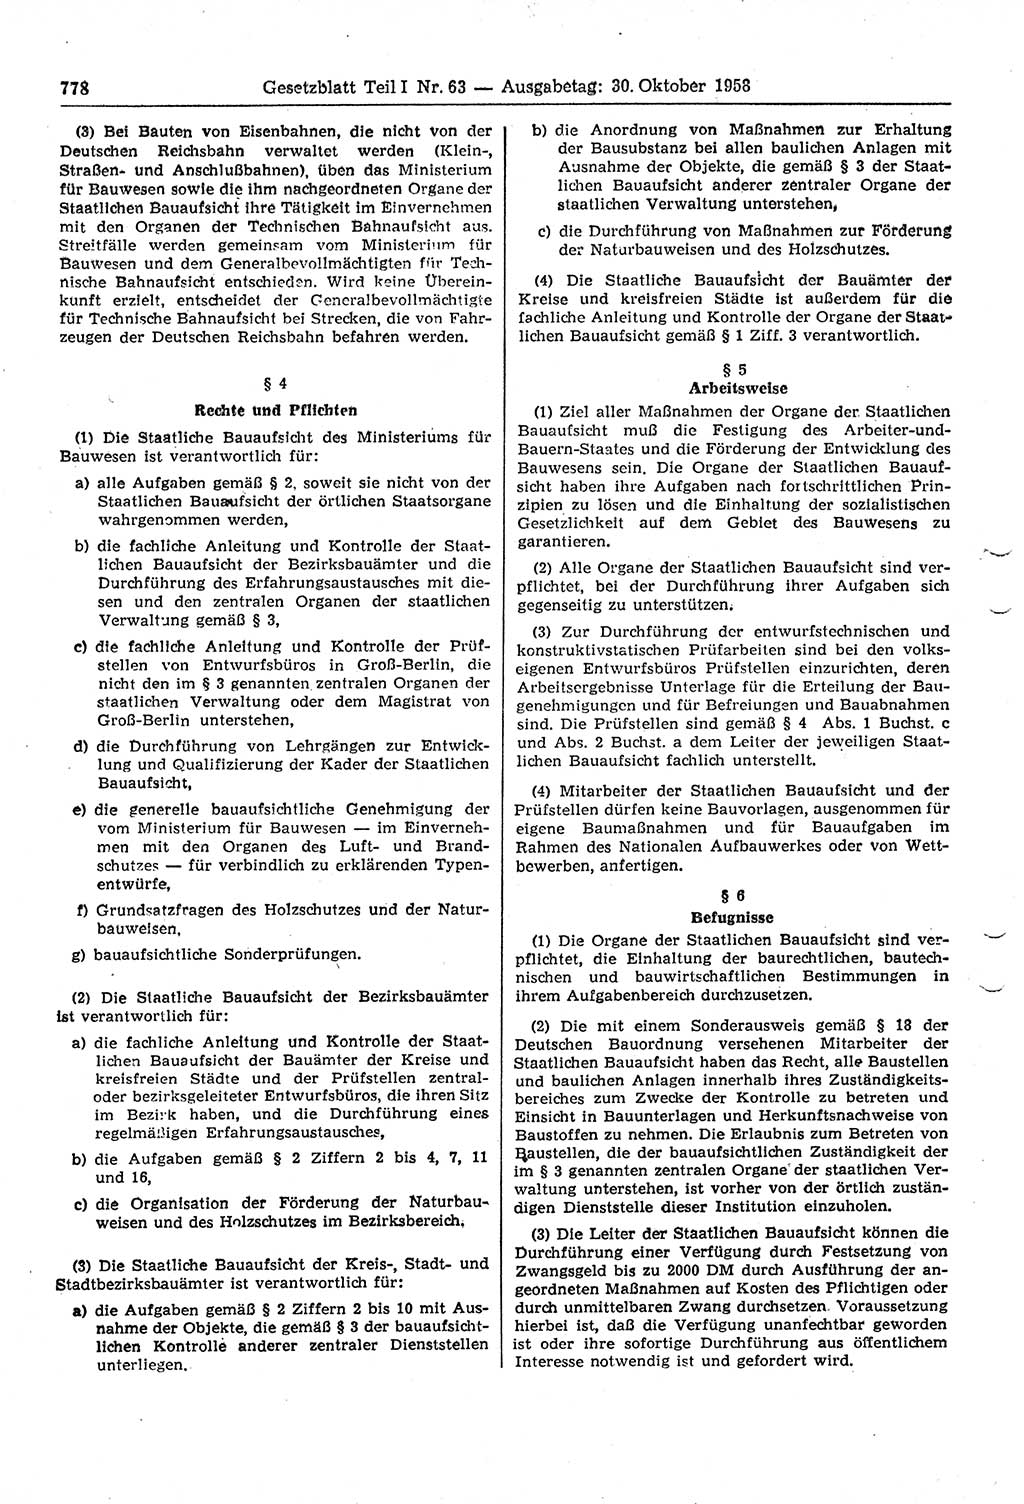 Gesetzblatt (GBl.) der Deutschen Demokratischen Republik (DDR) Teil Ⅰ 1958, Seite 778 (GBl. DDR Ⅰ 1958, S. 778)